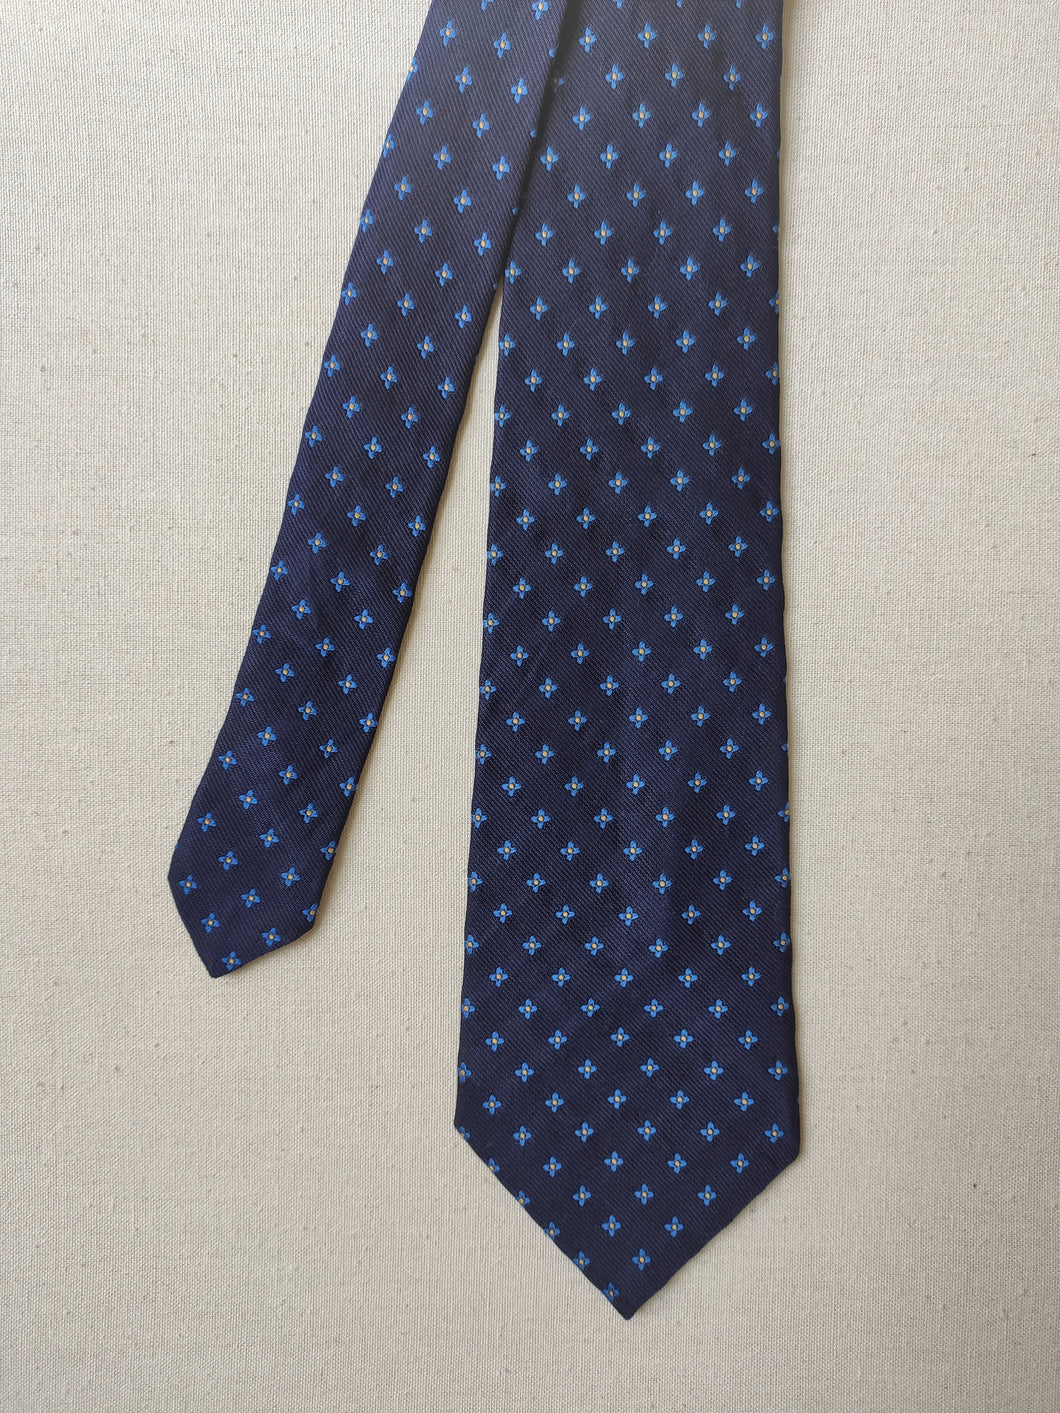 Berteil Paris cravate marine en soie à motif floral Made in England